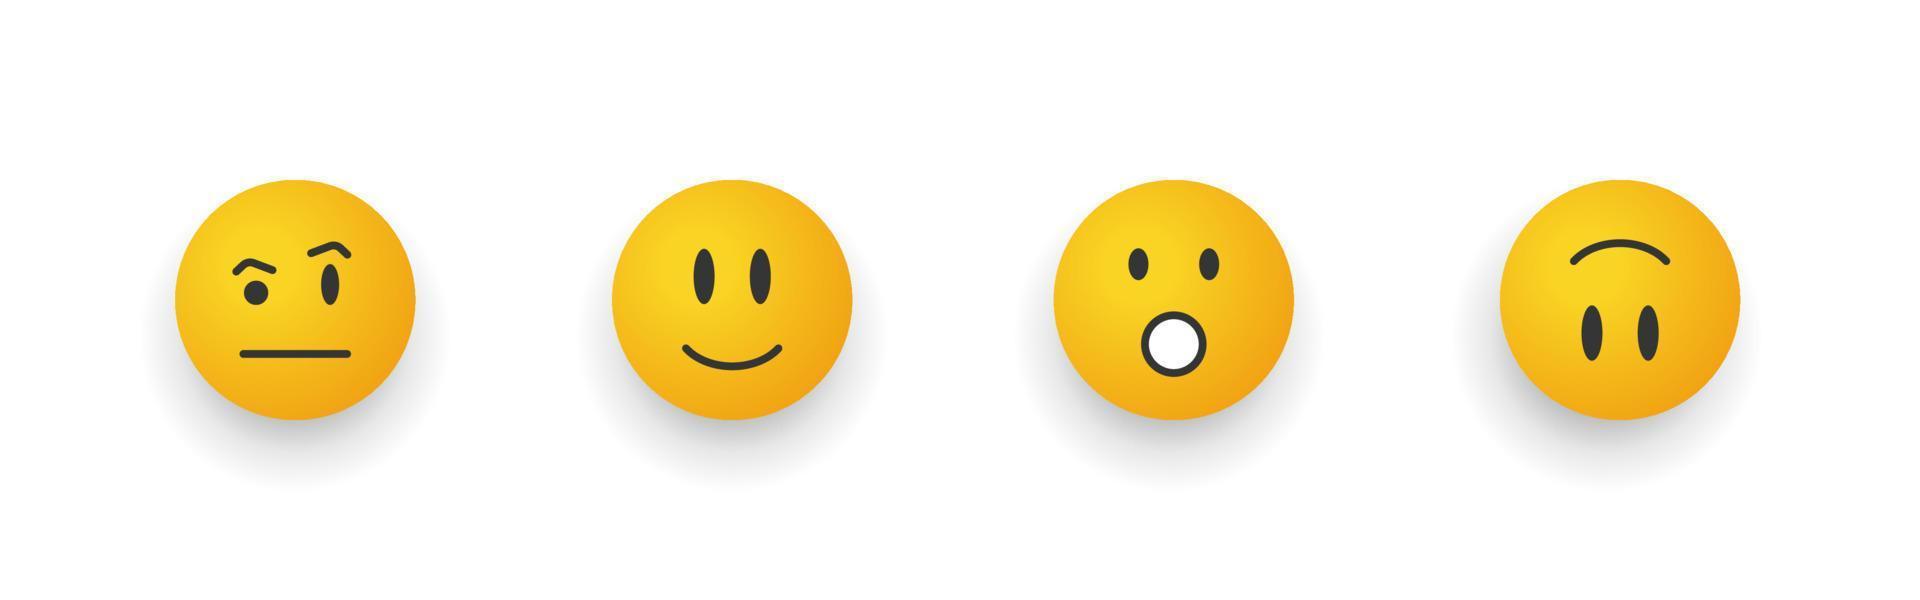 sorriso de emoticon. conjunto de emoji de desenho animado. rostos sorridentes com admiração. ilustração vetorial vetor